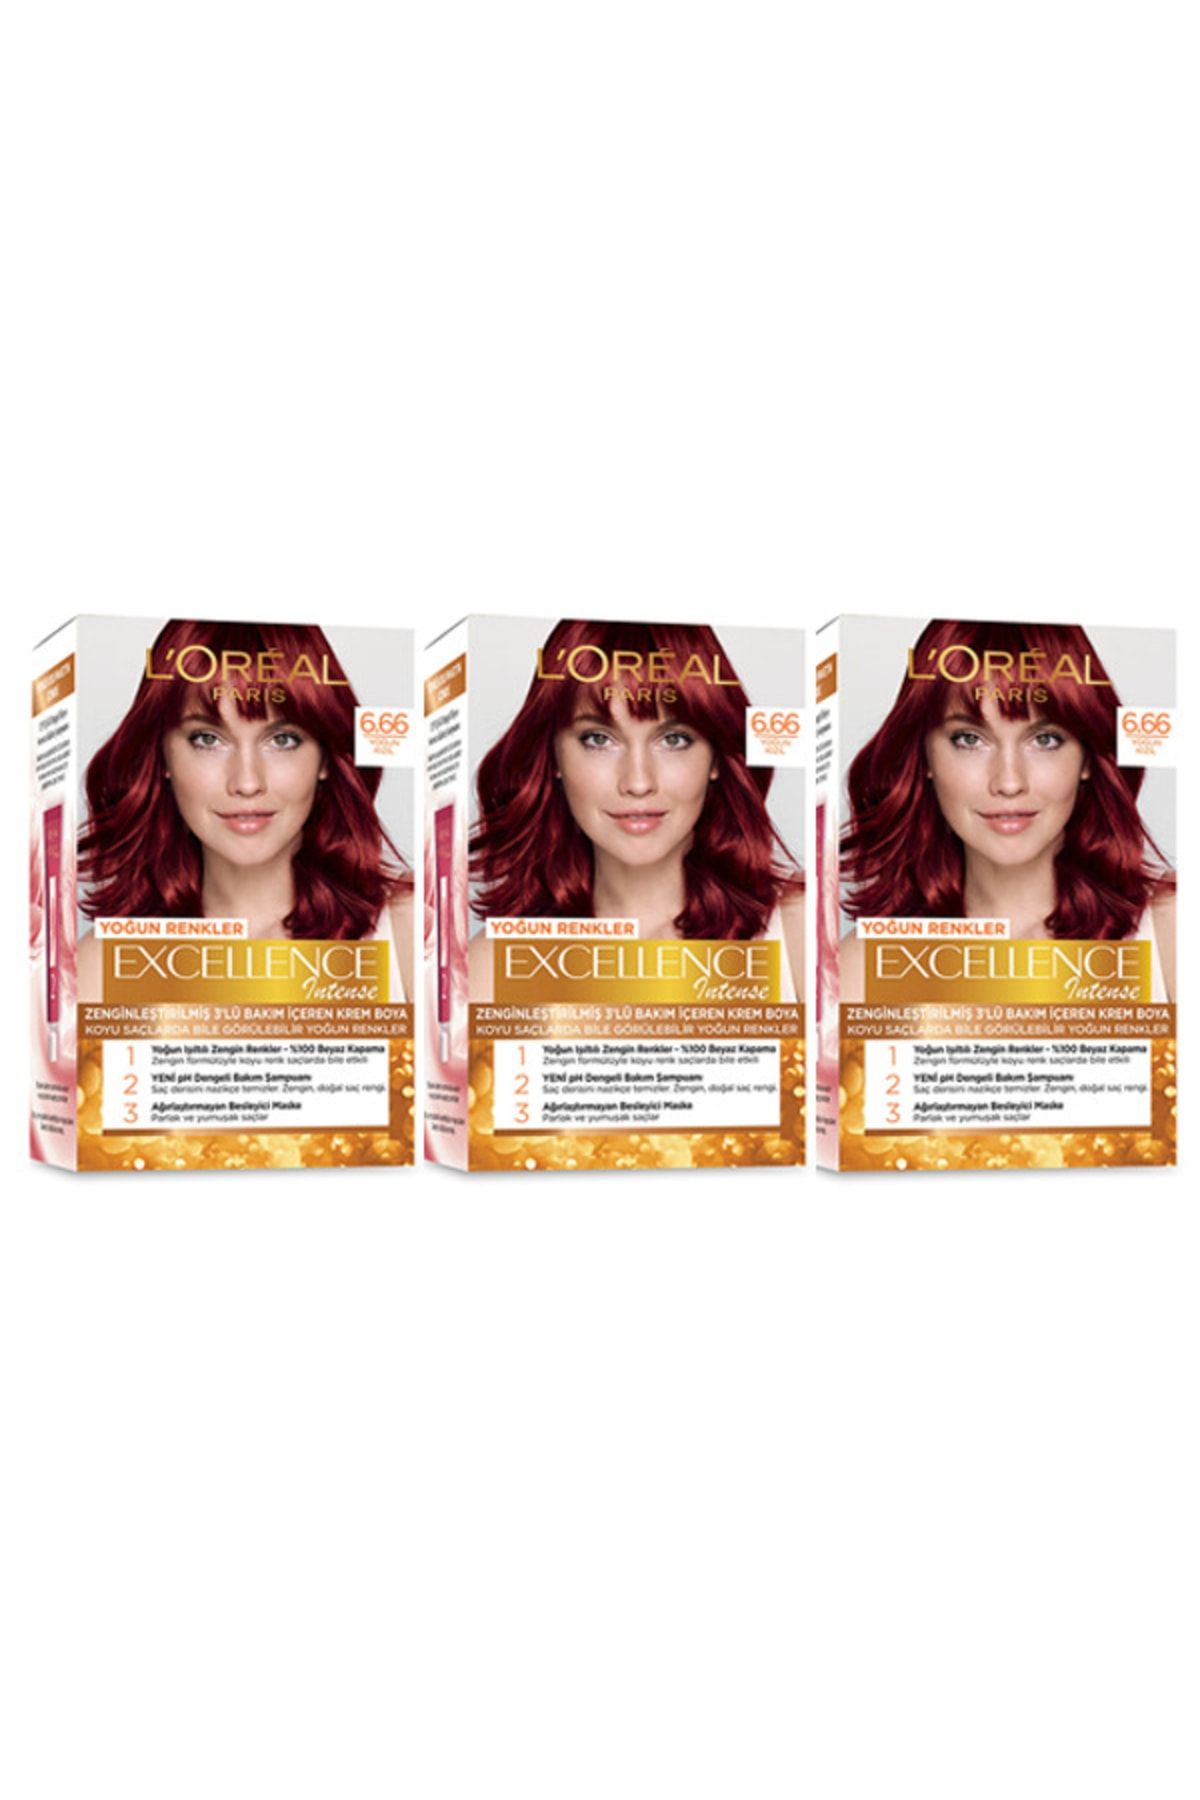 L'Oreal Paris Excellence Saç Boyası 6.66 Yoğun Kızıl 3'lü Set